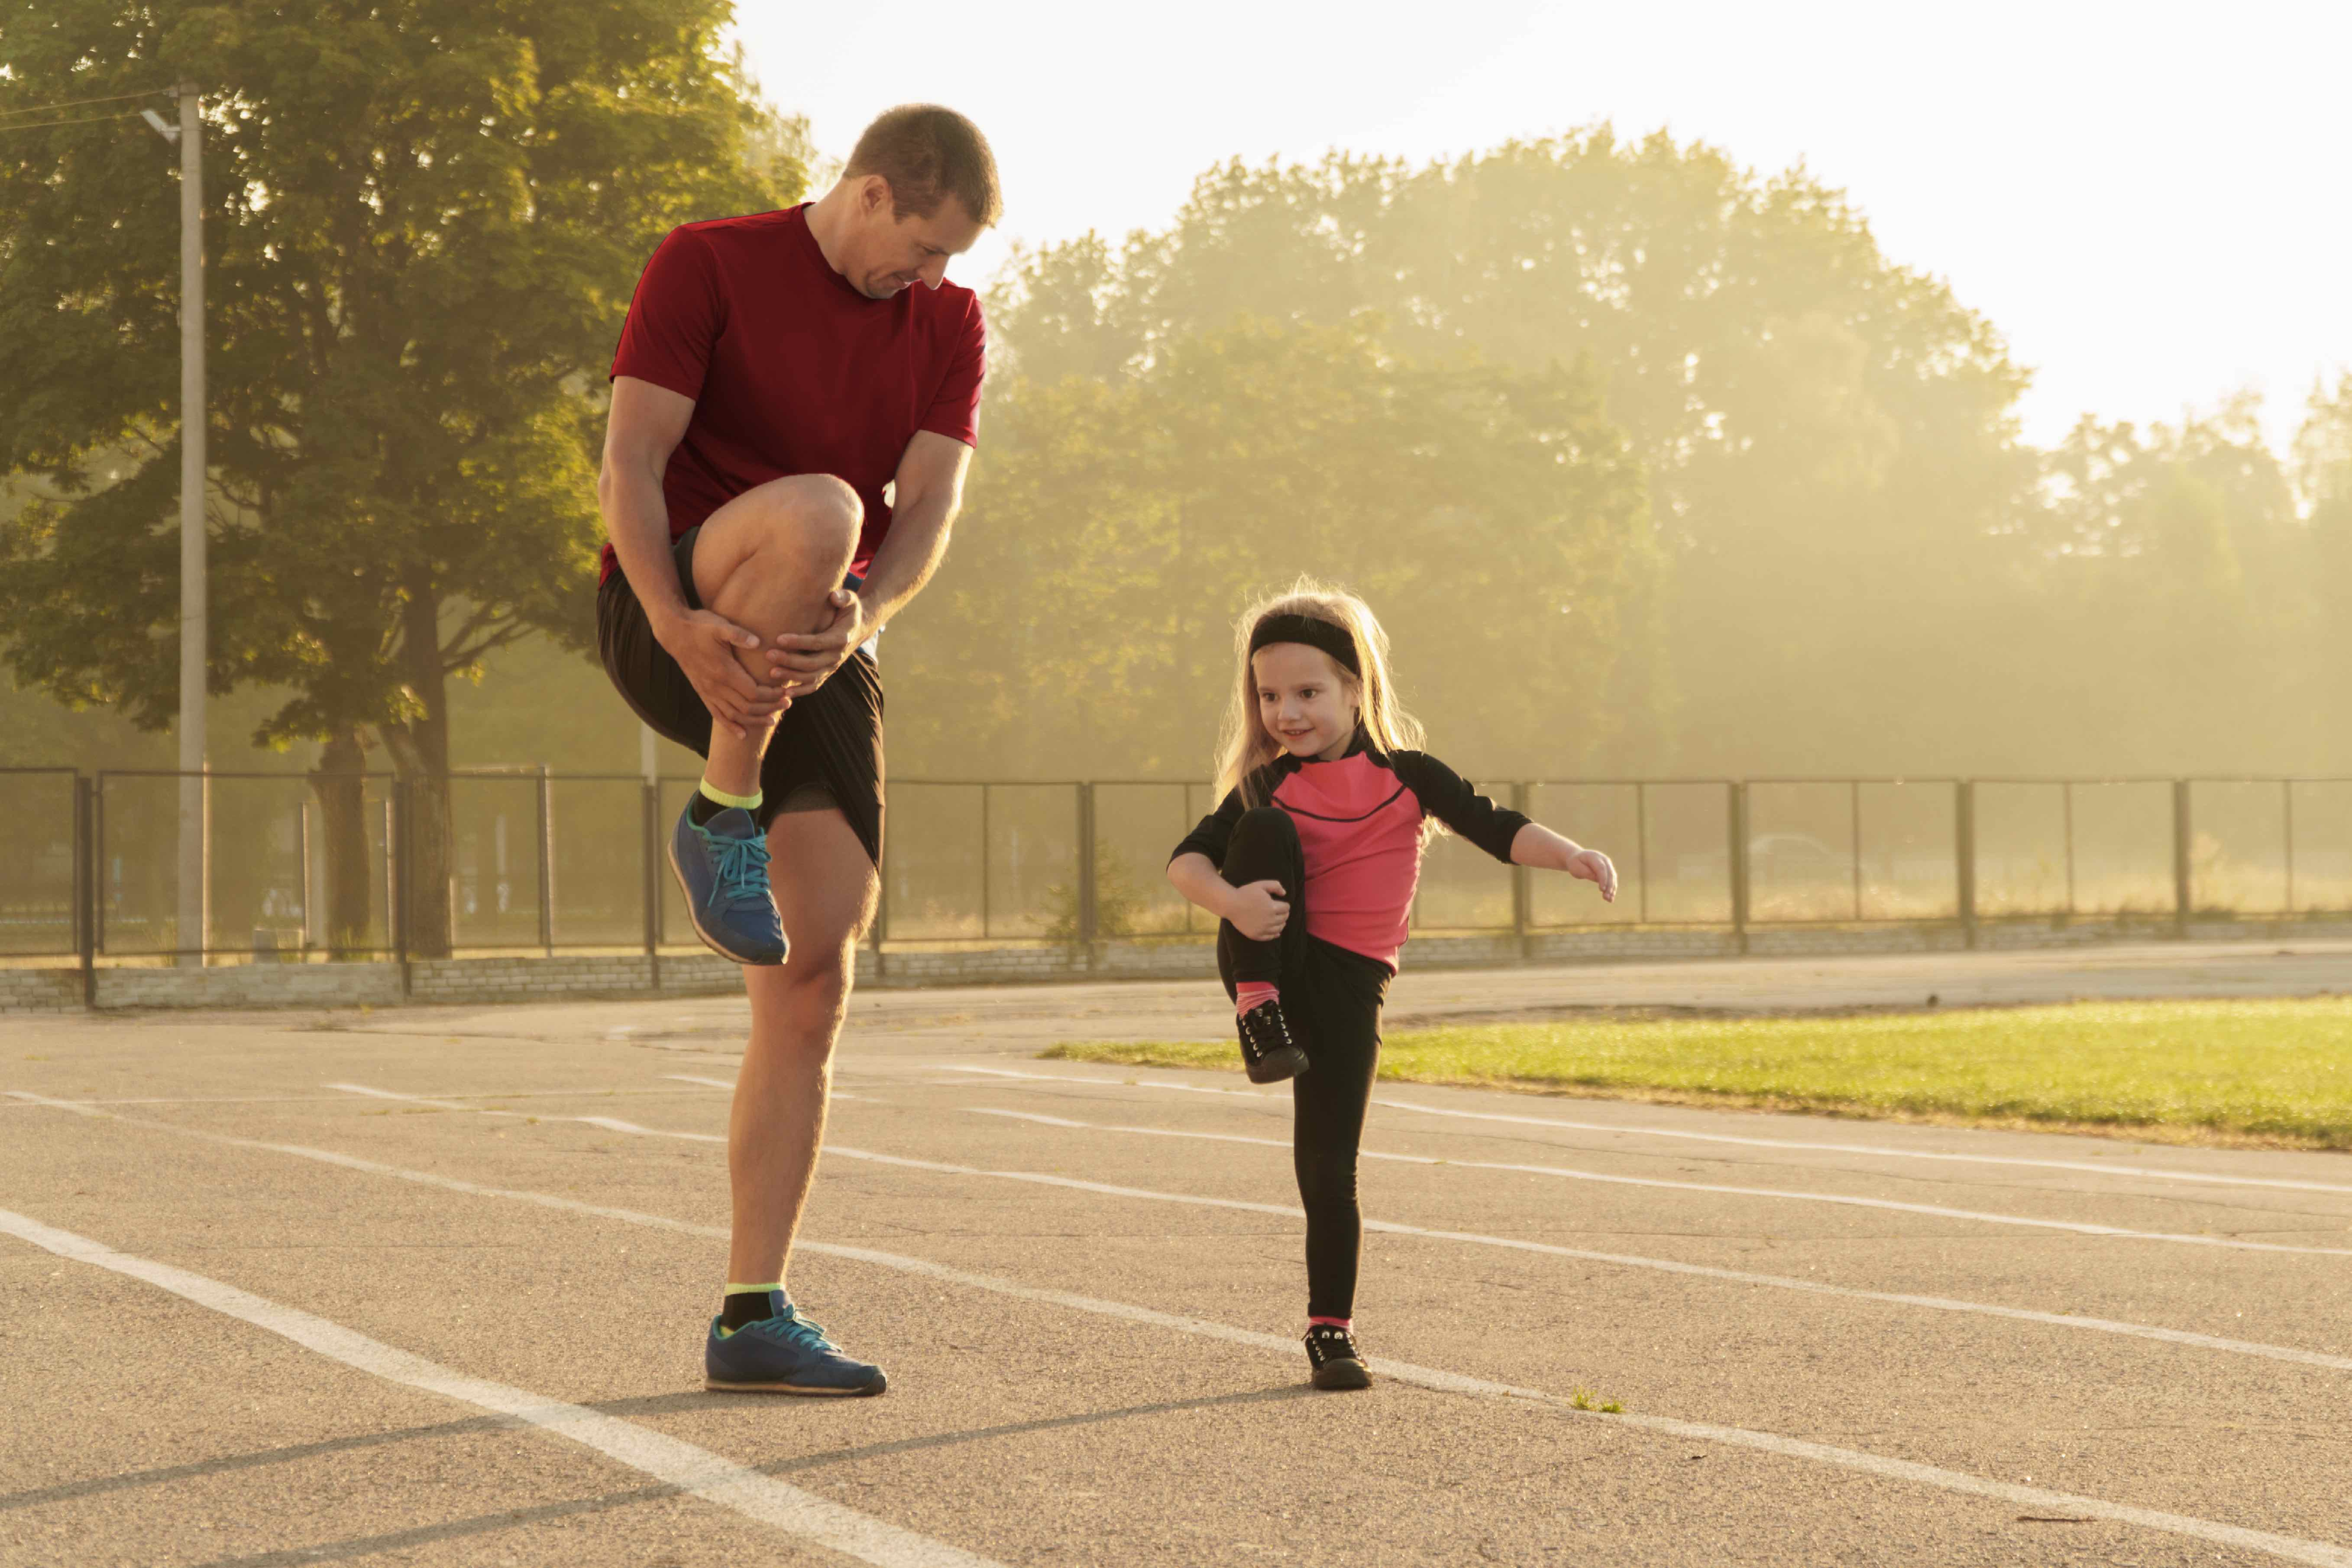 Yuk, ajak anak untuk olahraga lari supaya lebih sehat dan aktif